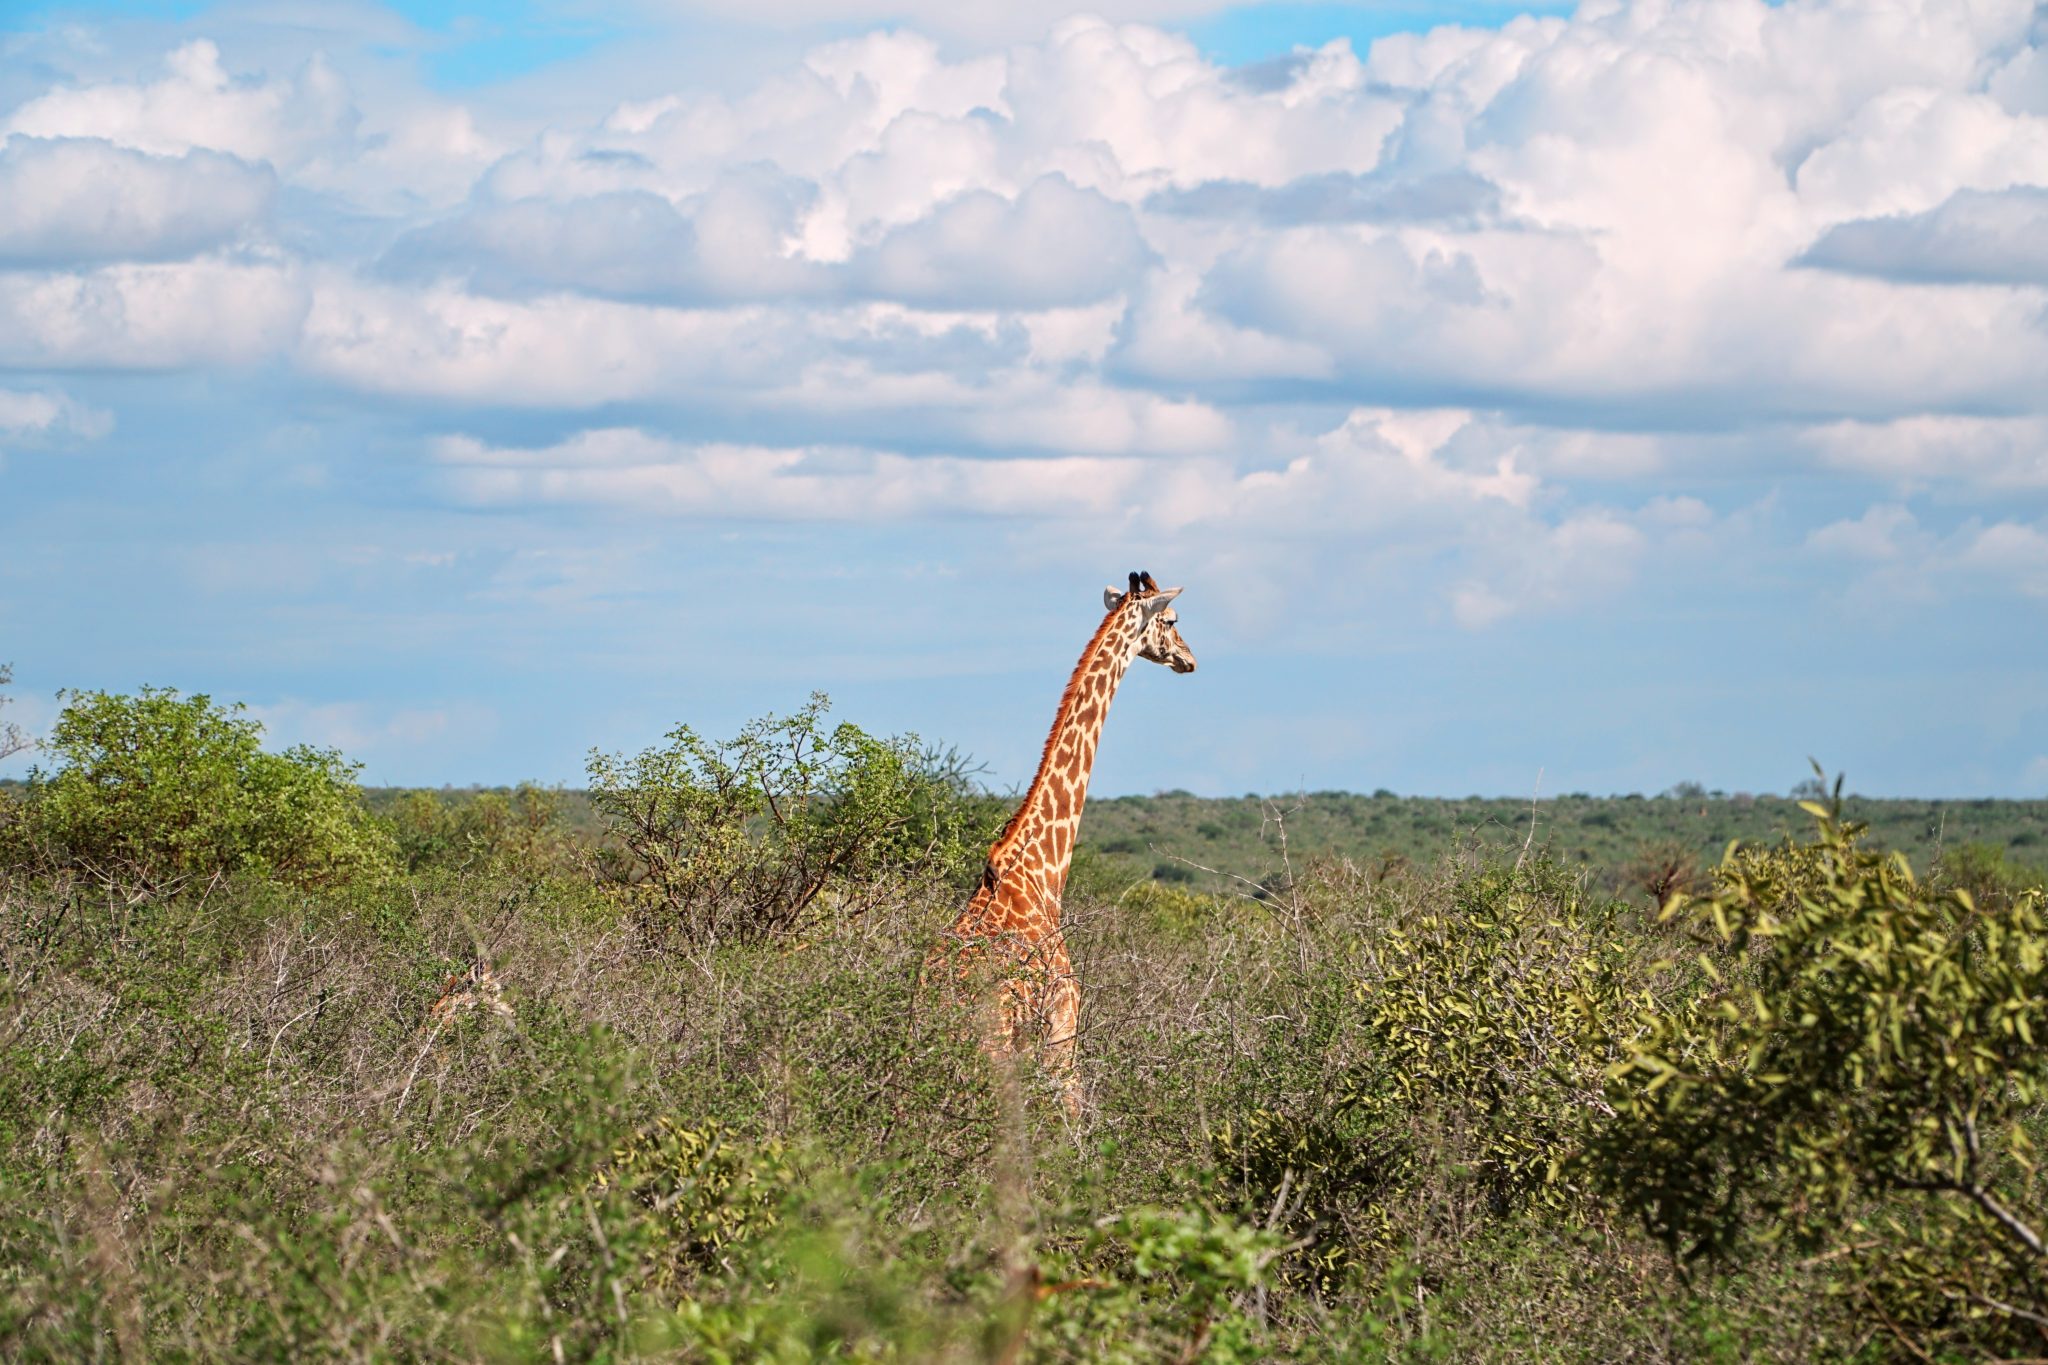 A giraffe in Africa